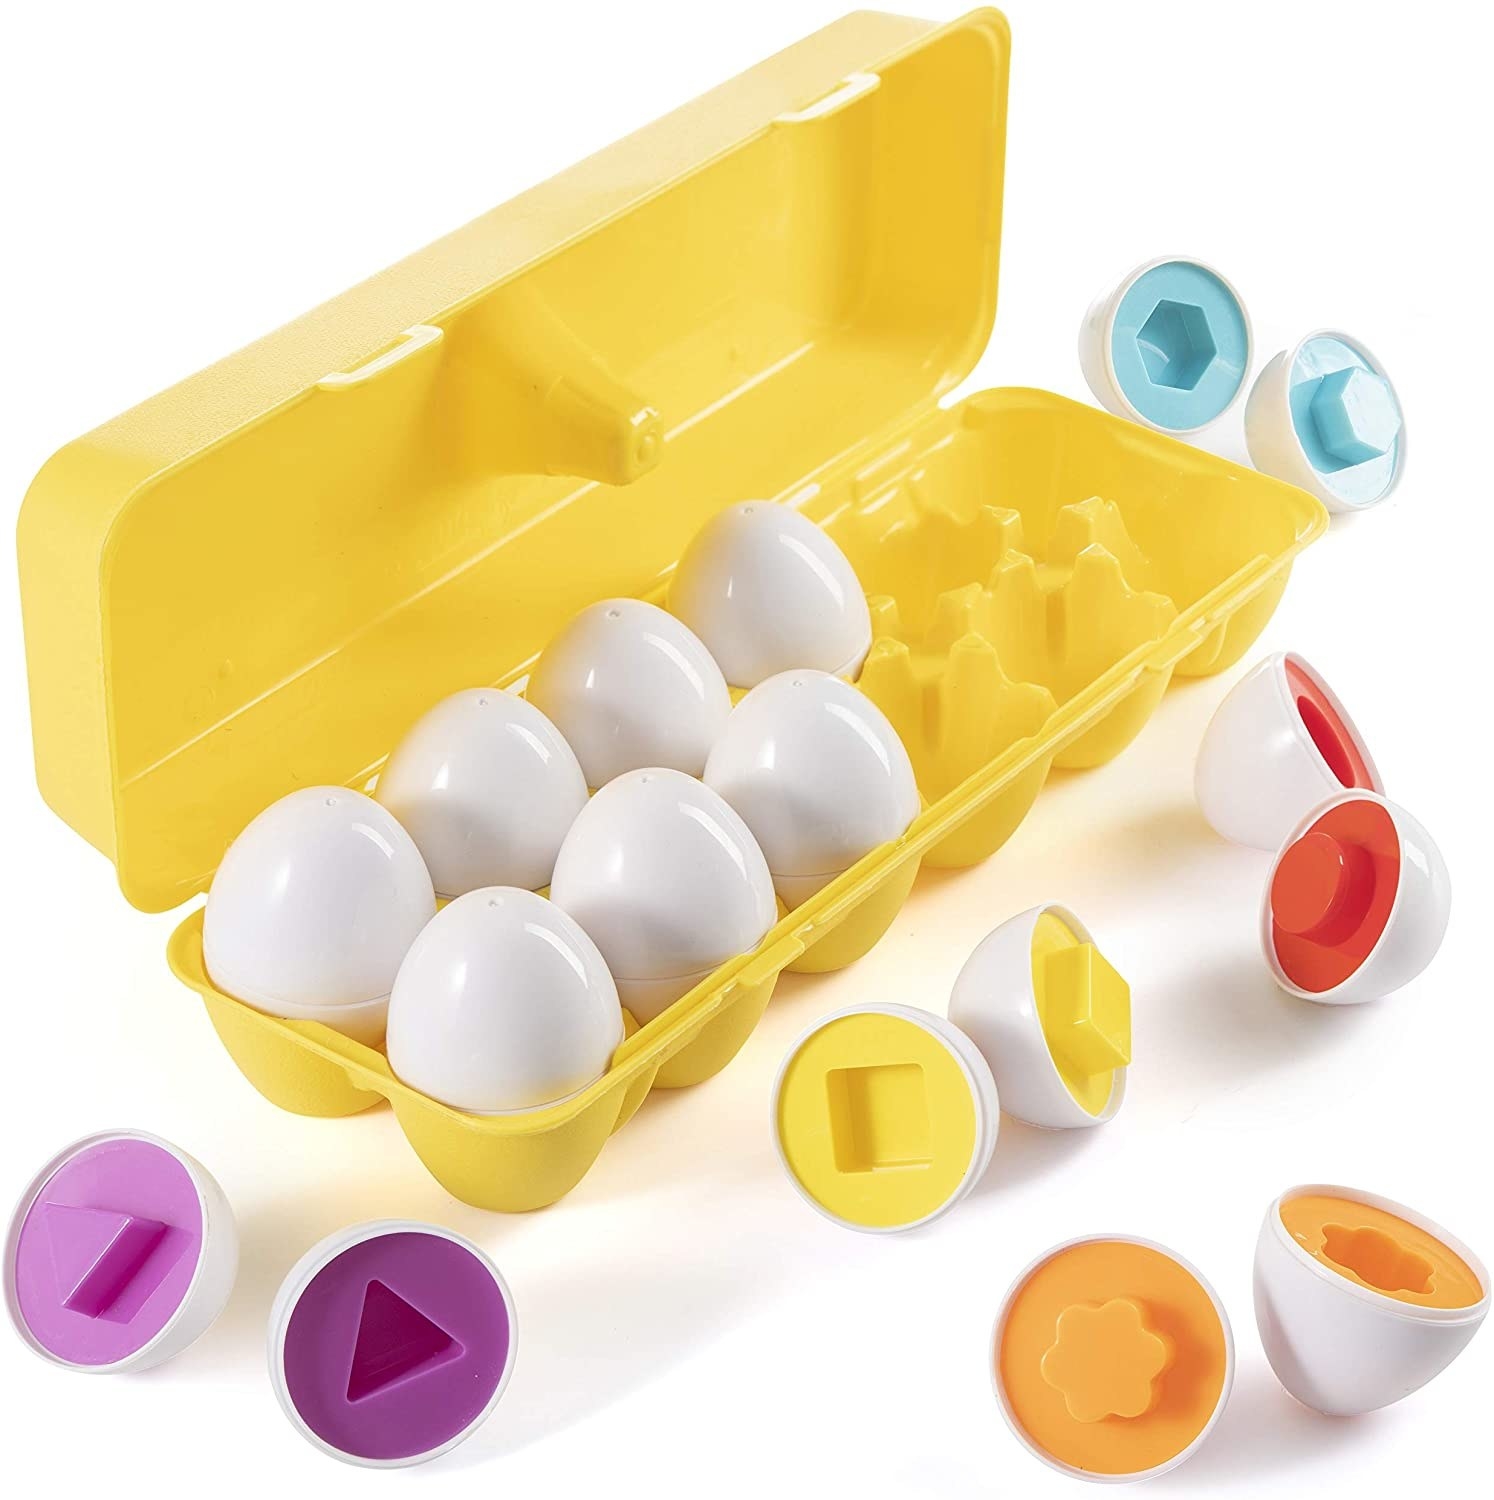 一个黄色的蛋箱装满玩具蛋打破了一半内可以看到不同的形状和颜色